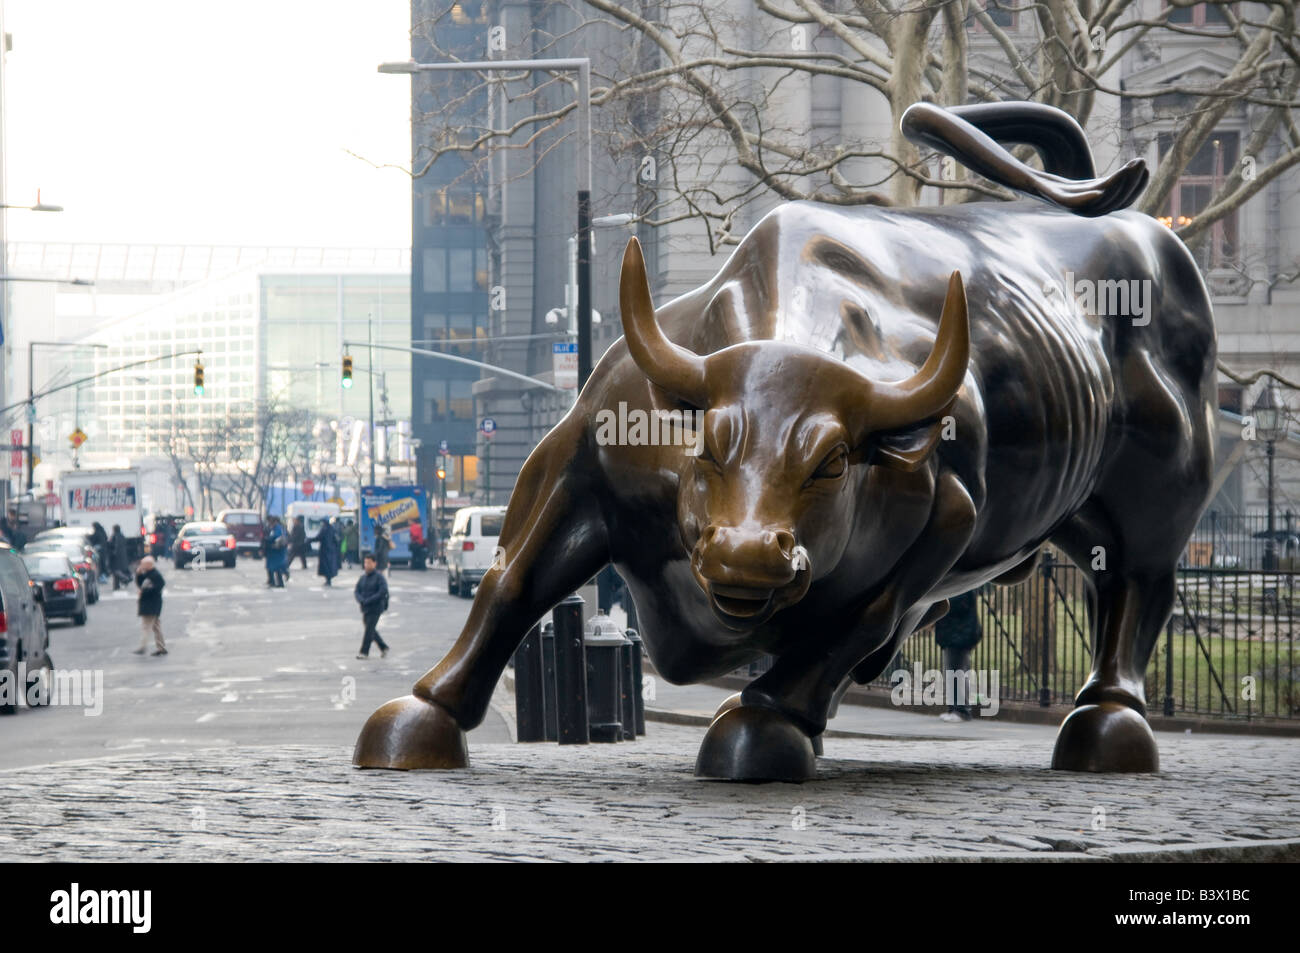 Зе бык кирова. Бык Нью-Йорк фондовая биржа. Атакующий бык скульптура Нью-Йорк. Бык на Уолл-стрит в Нью-Йорке. Бык с Уолл стрит.